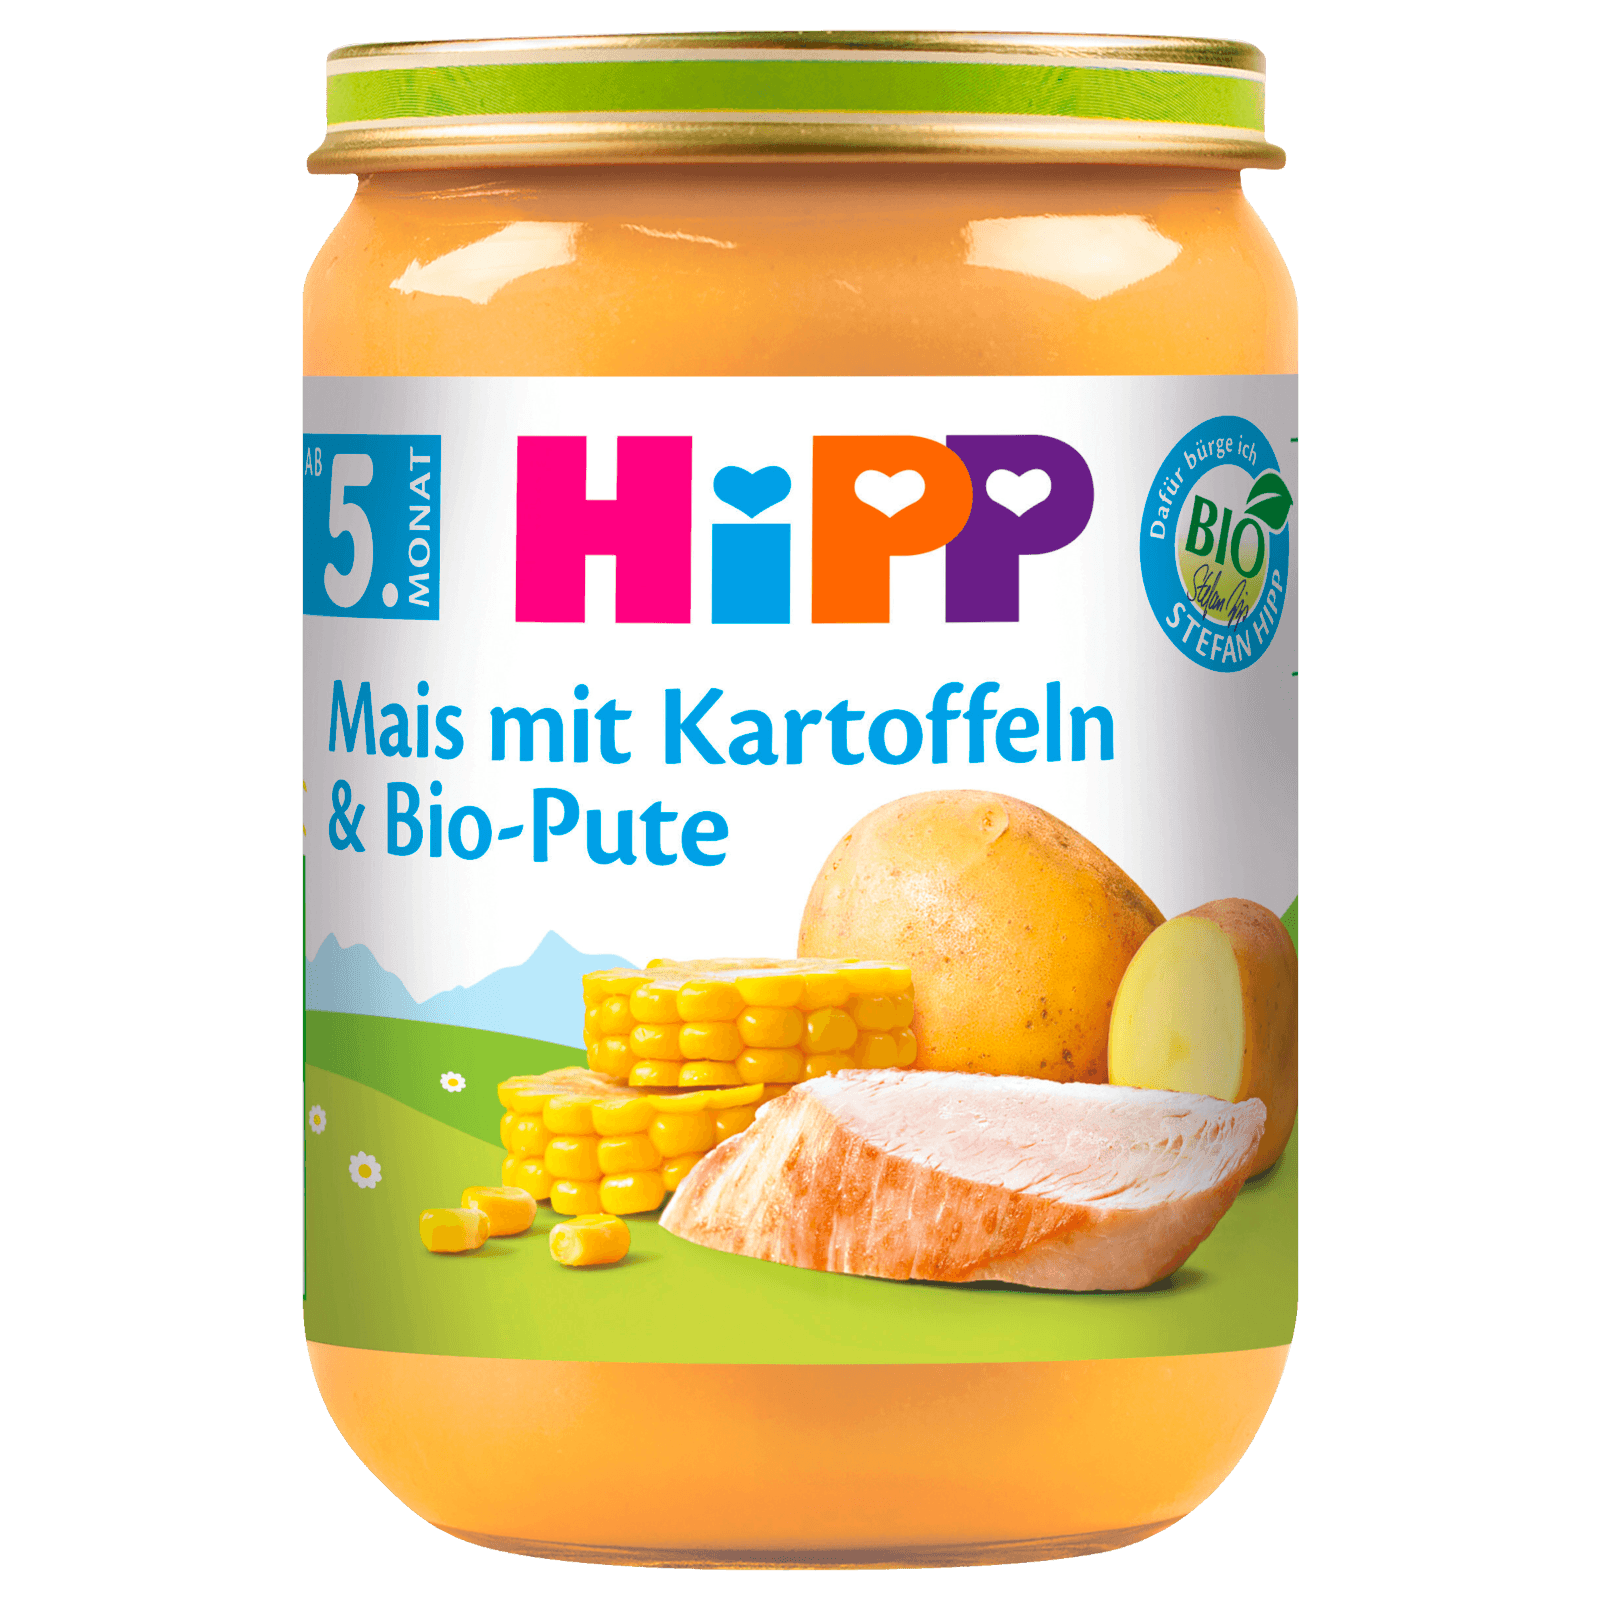 Hipp Mais mit Kartoffelpüree & Bio-Pute 190g